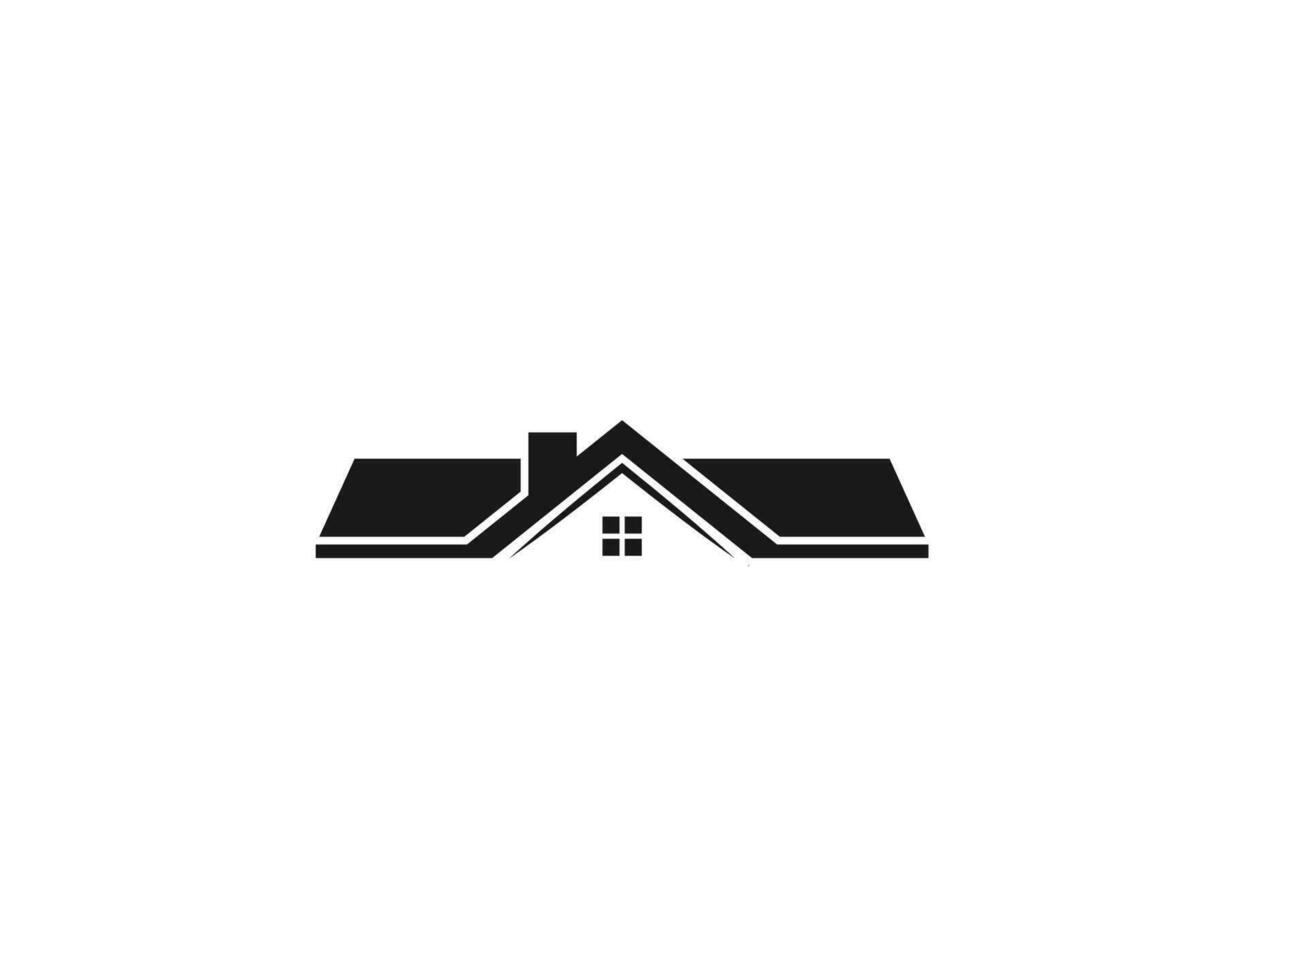 Casa logo vettore illustrazione. Casa tetto vero tenuta icona vettore